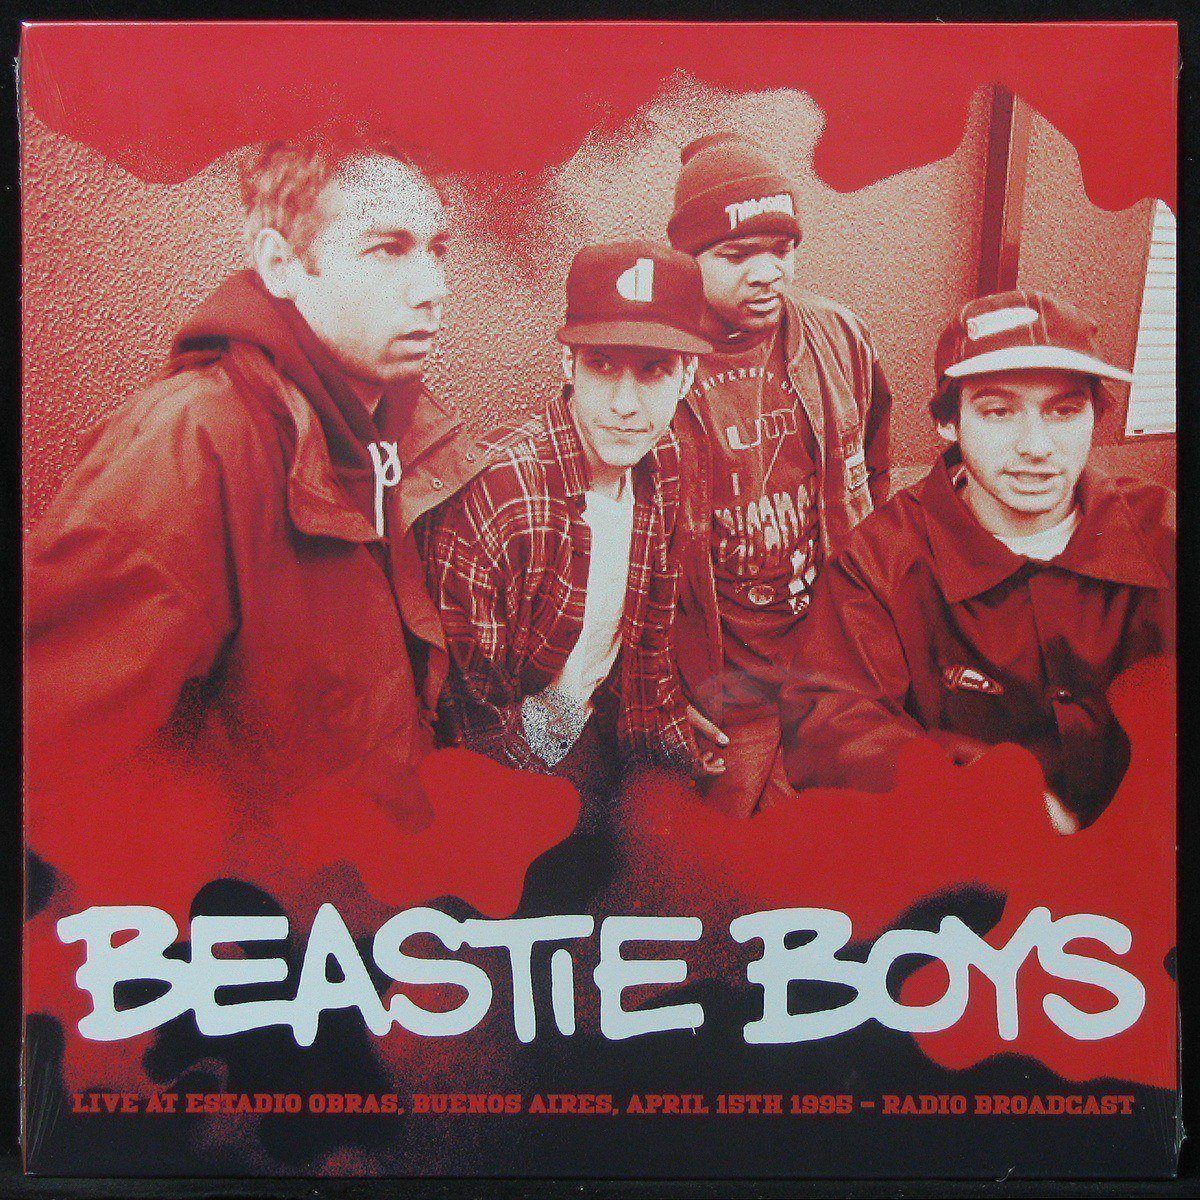 LP Beastie Boys — Live At Estadio Obras, Buenos Aires, April 15th 1995 фото